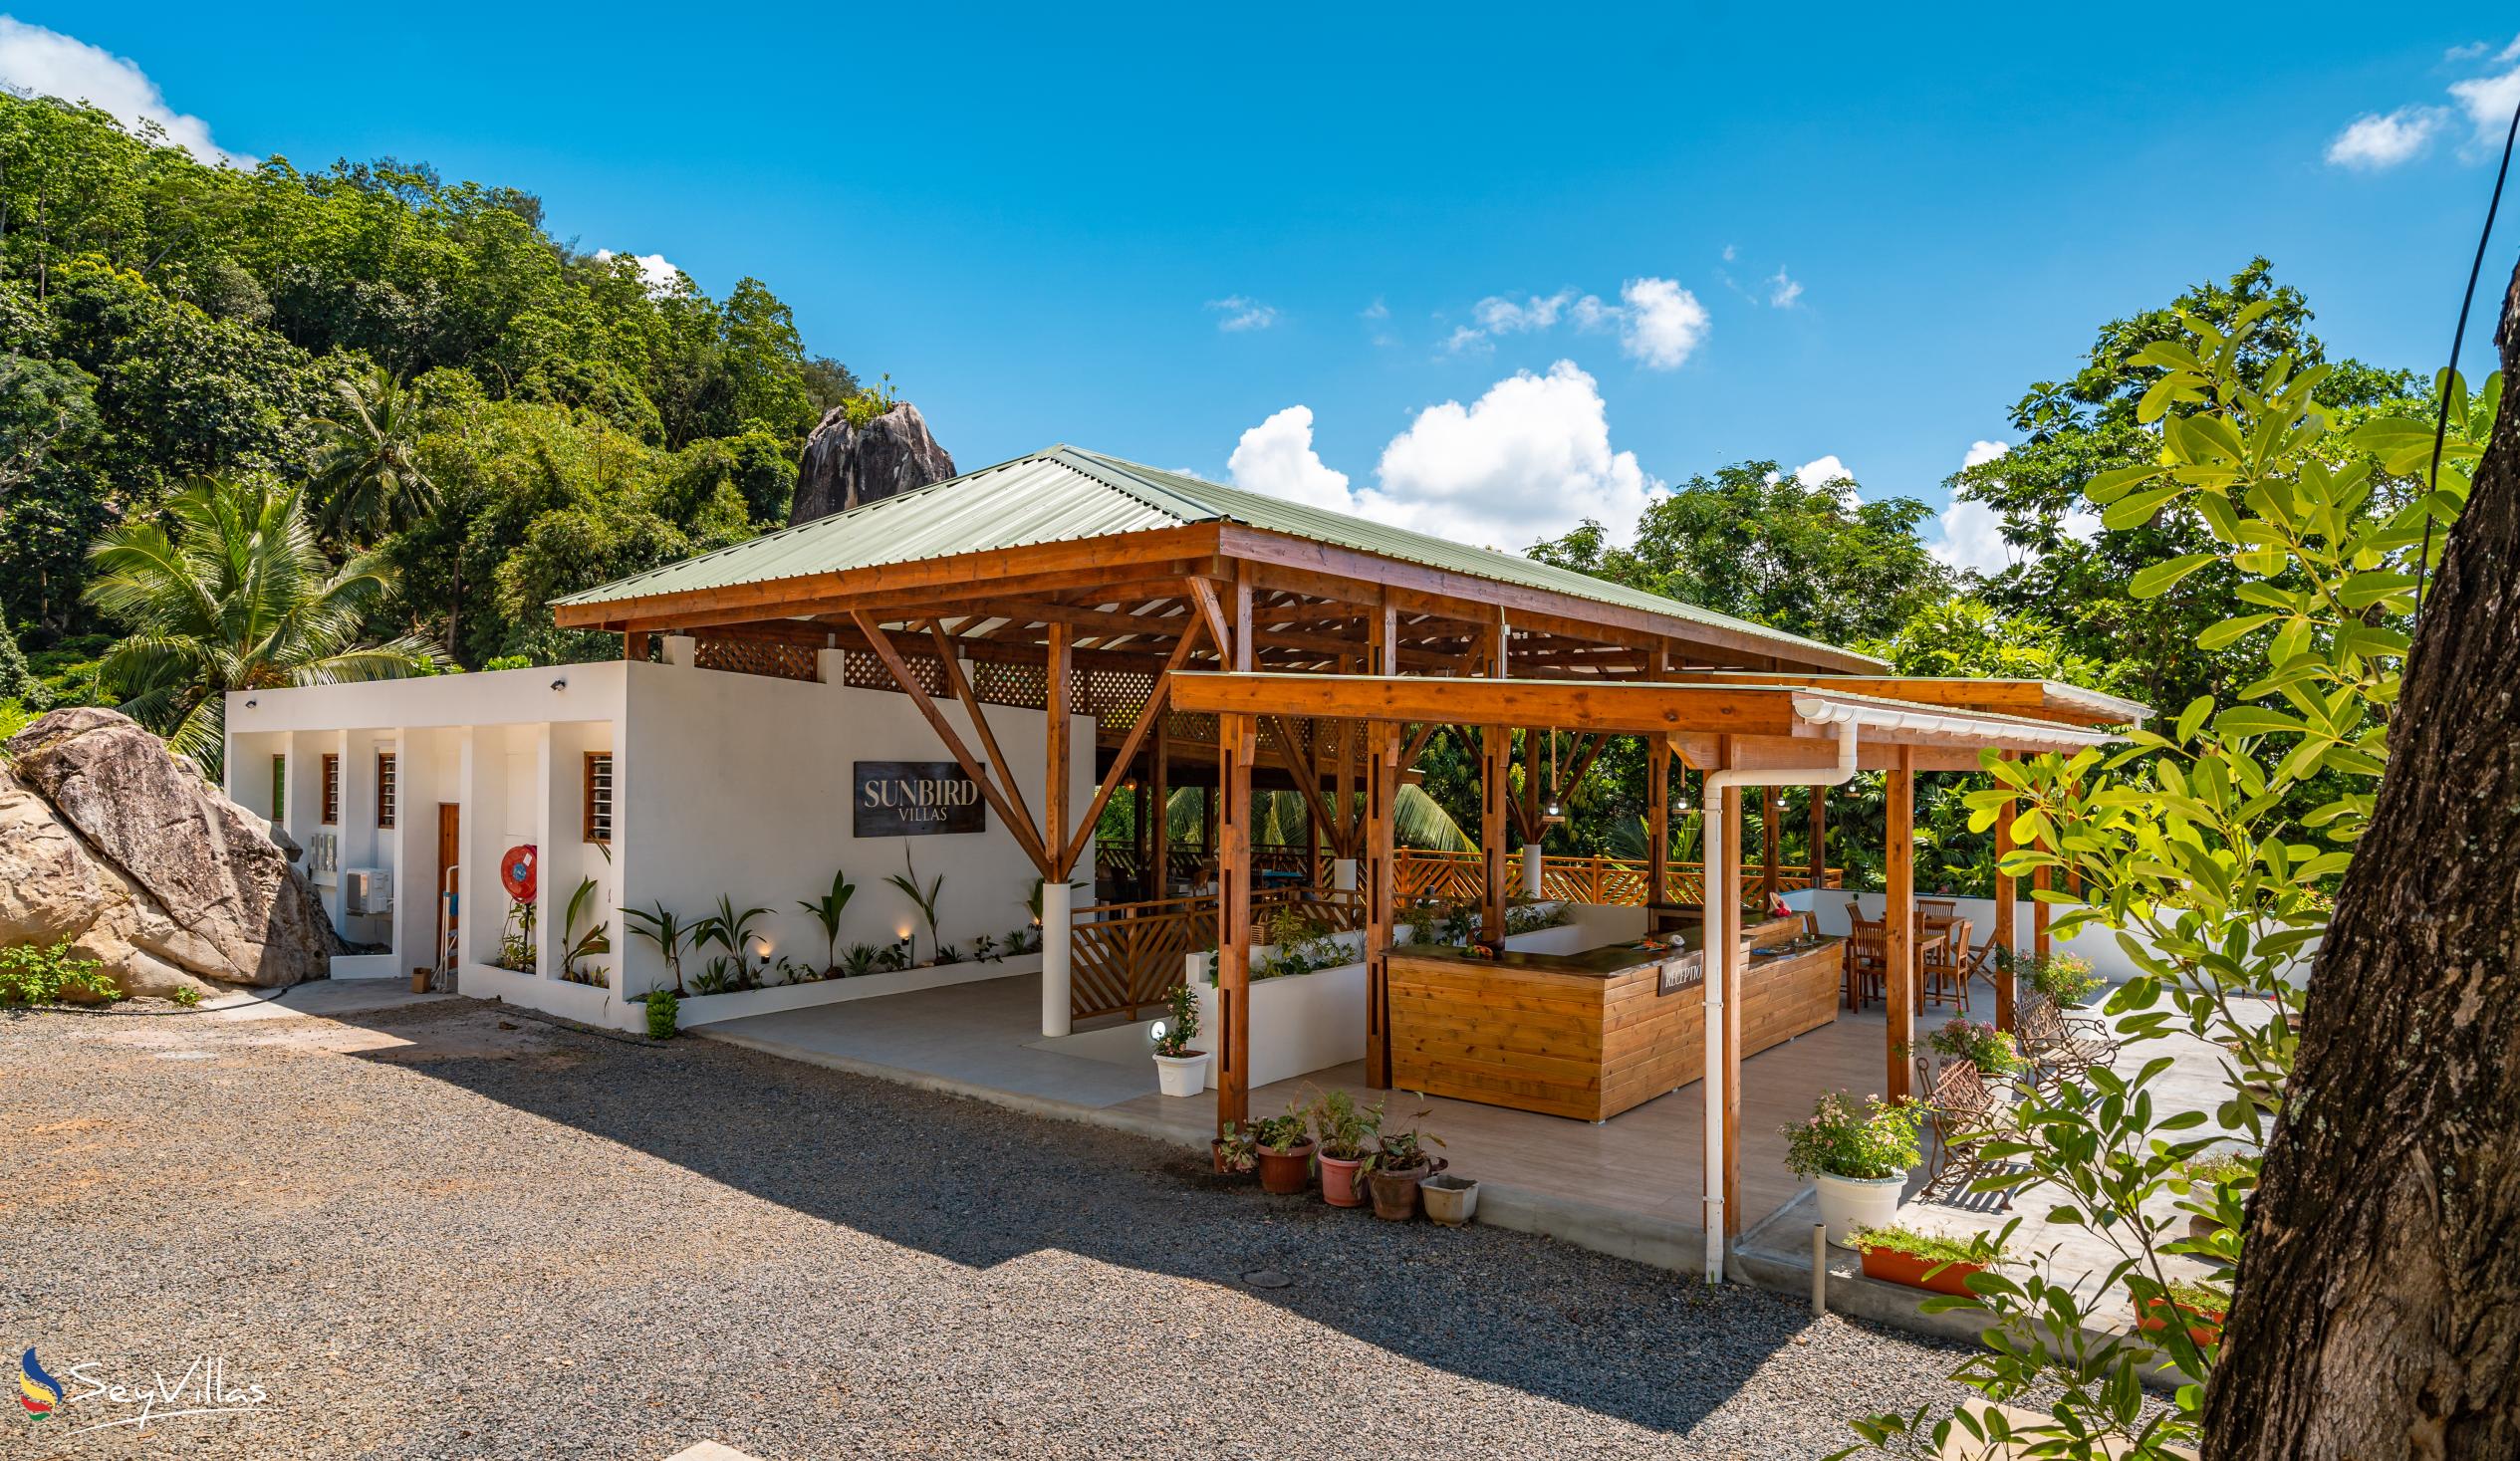 Photo 9: Sunbird Villas - Outdoor area - Mahé (Seychelles)